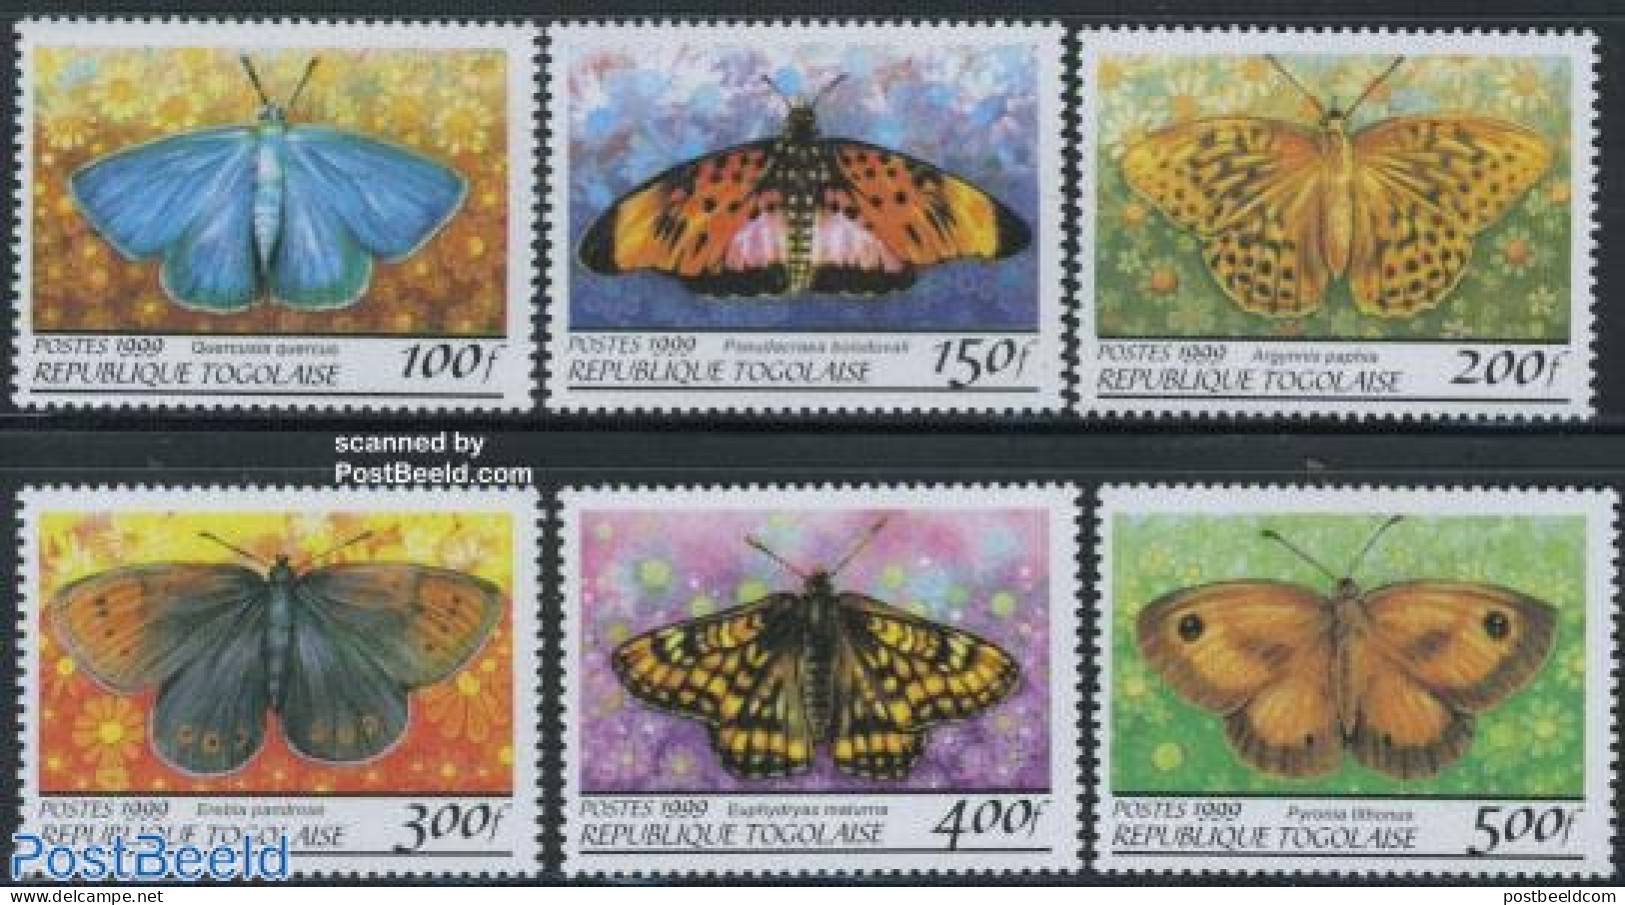 Togo 1999 Butterflies 6v, Mint NH, Nature - Butterflies - Togo (1960-...)